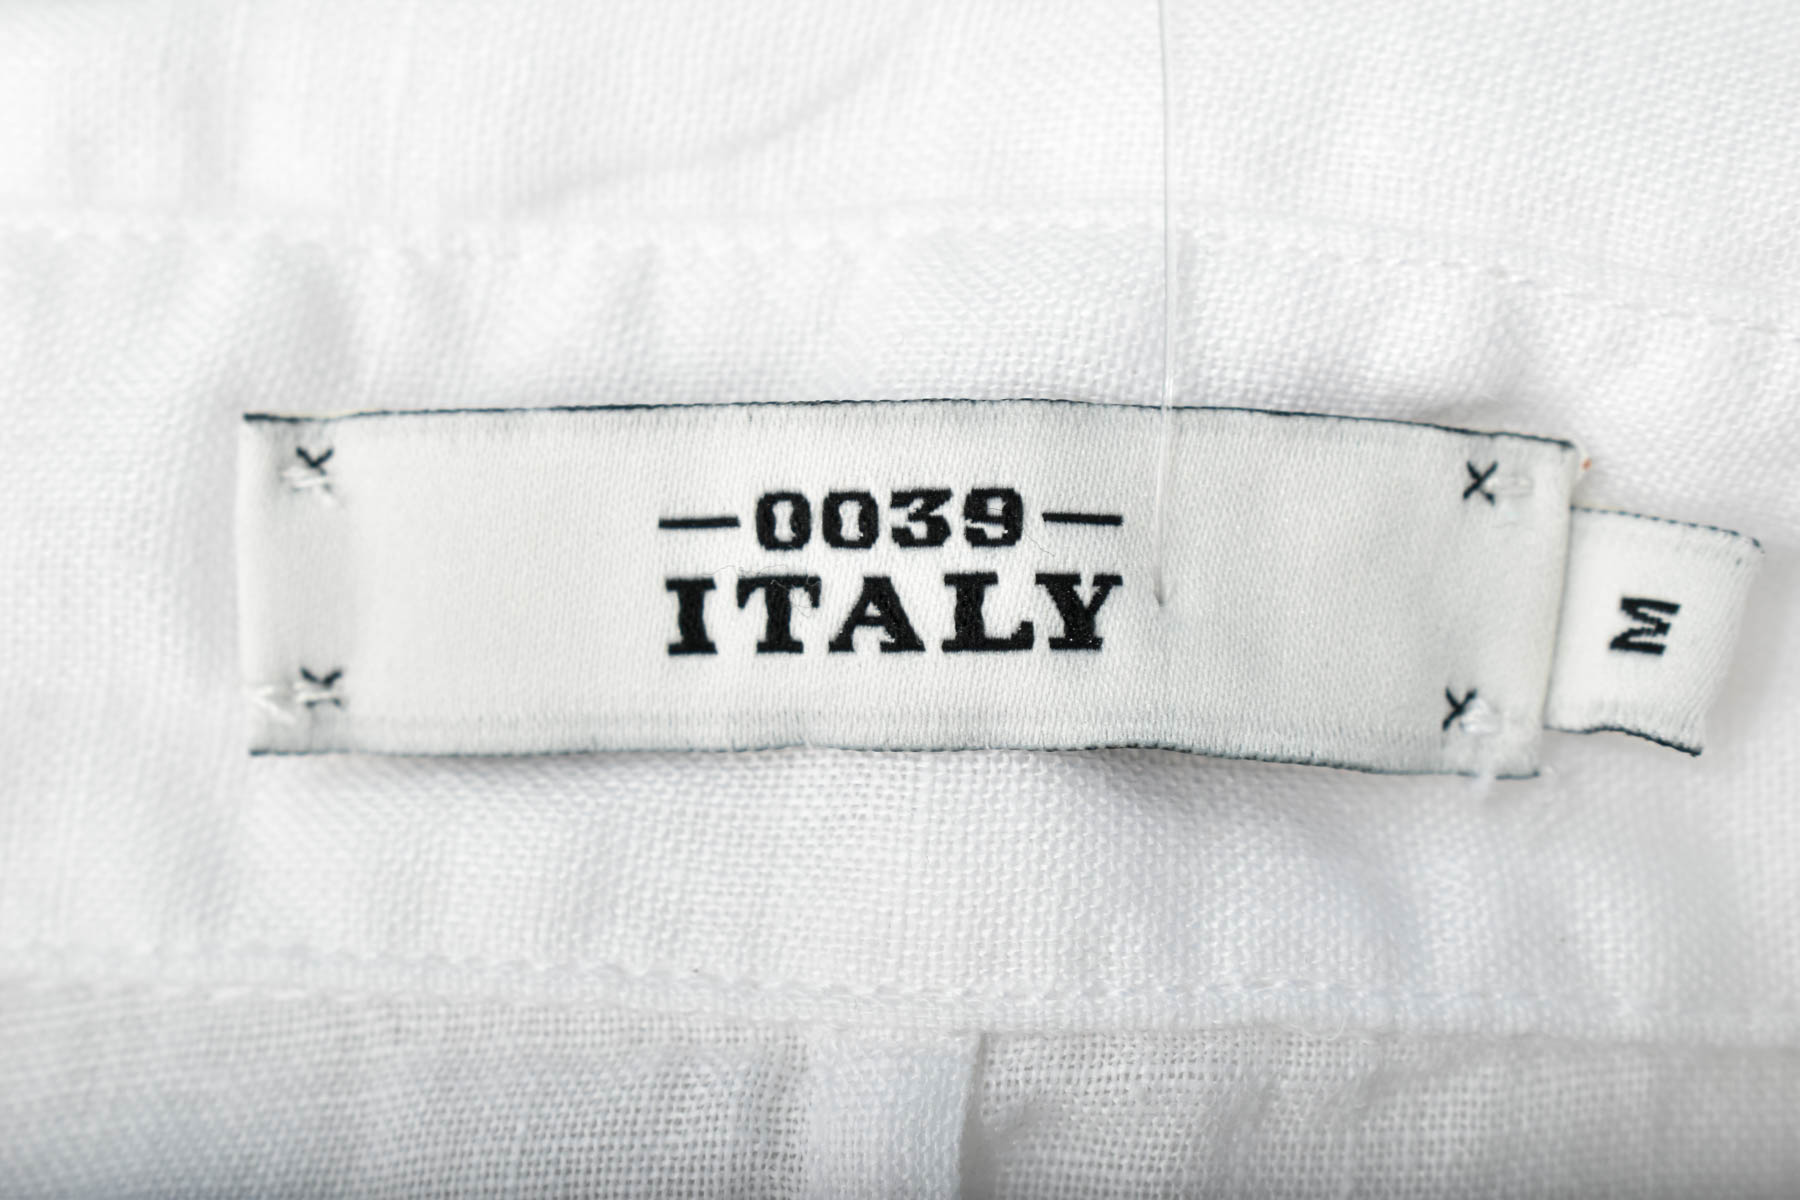 Дамска риза - 0039 Italy - 2